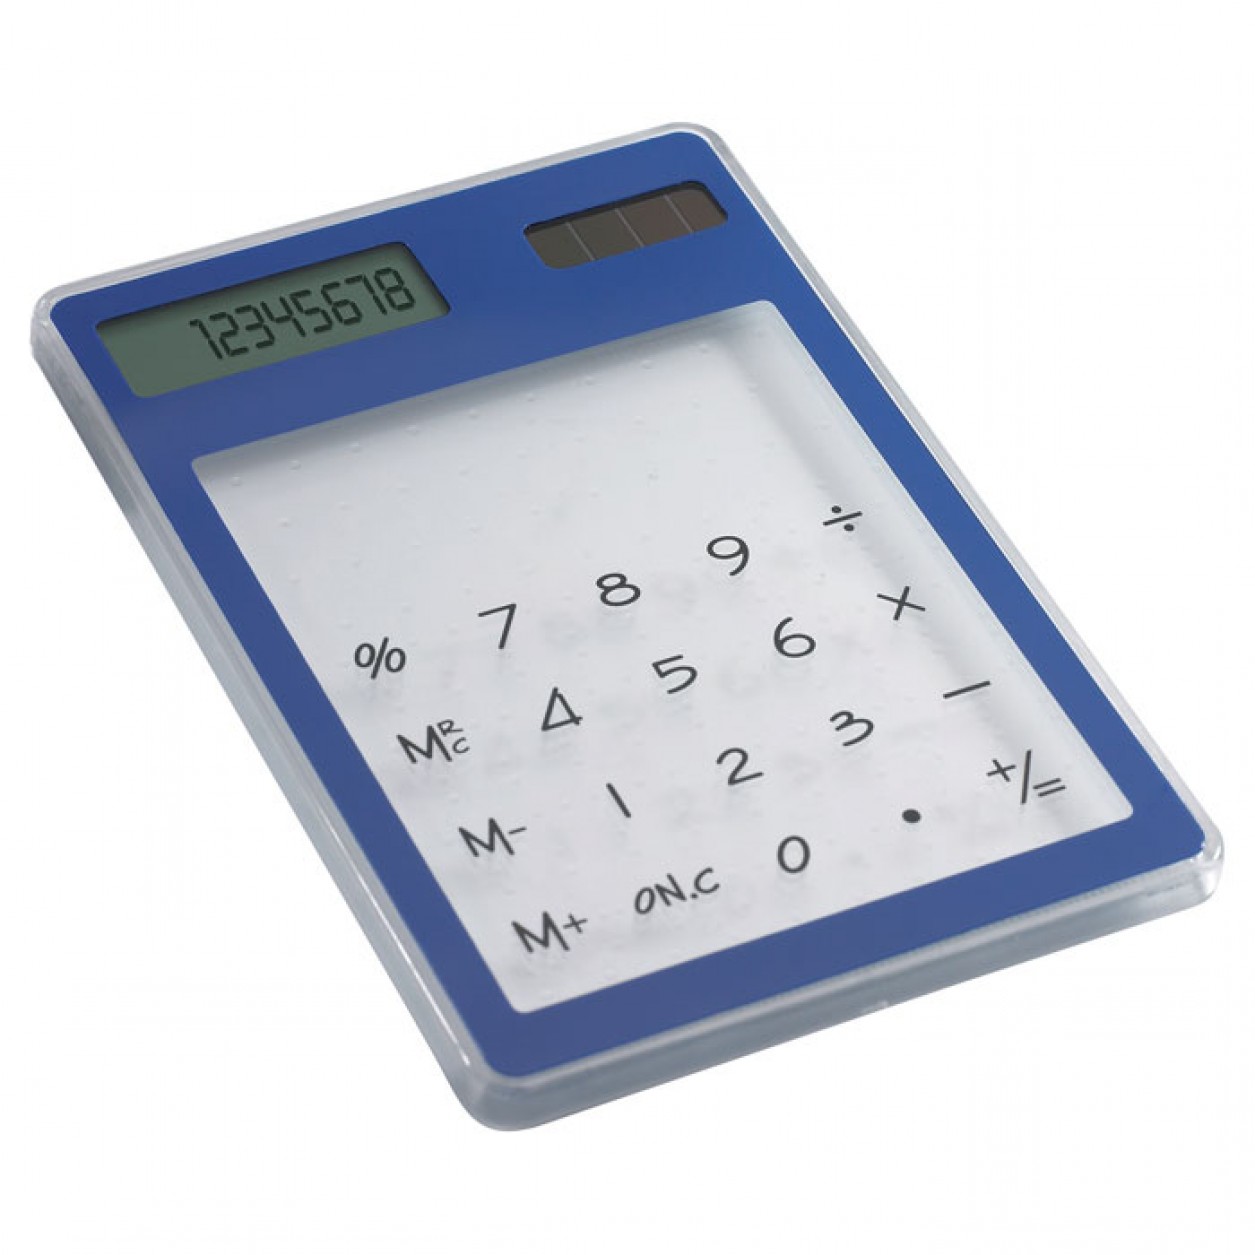 OS-0132 transparent solar calculators